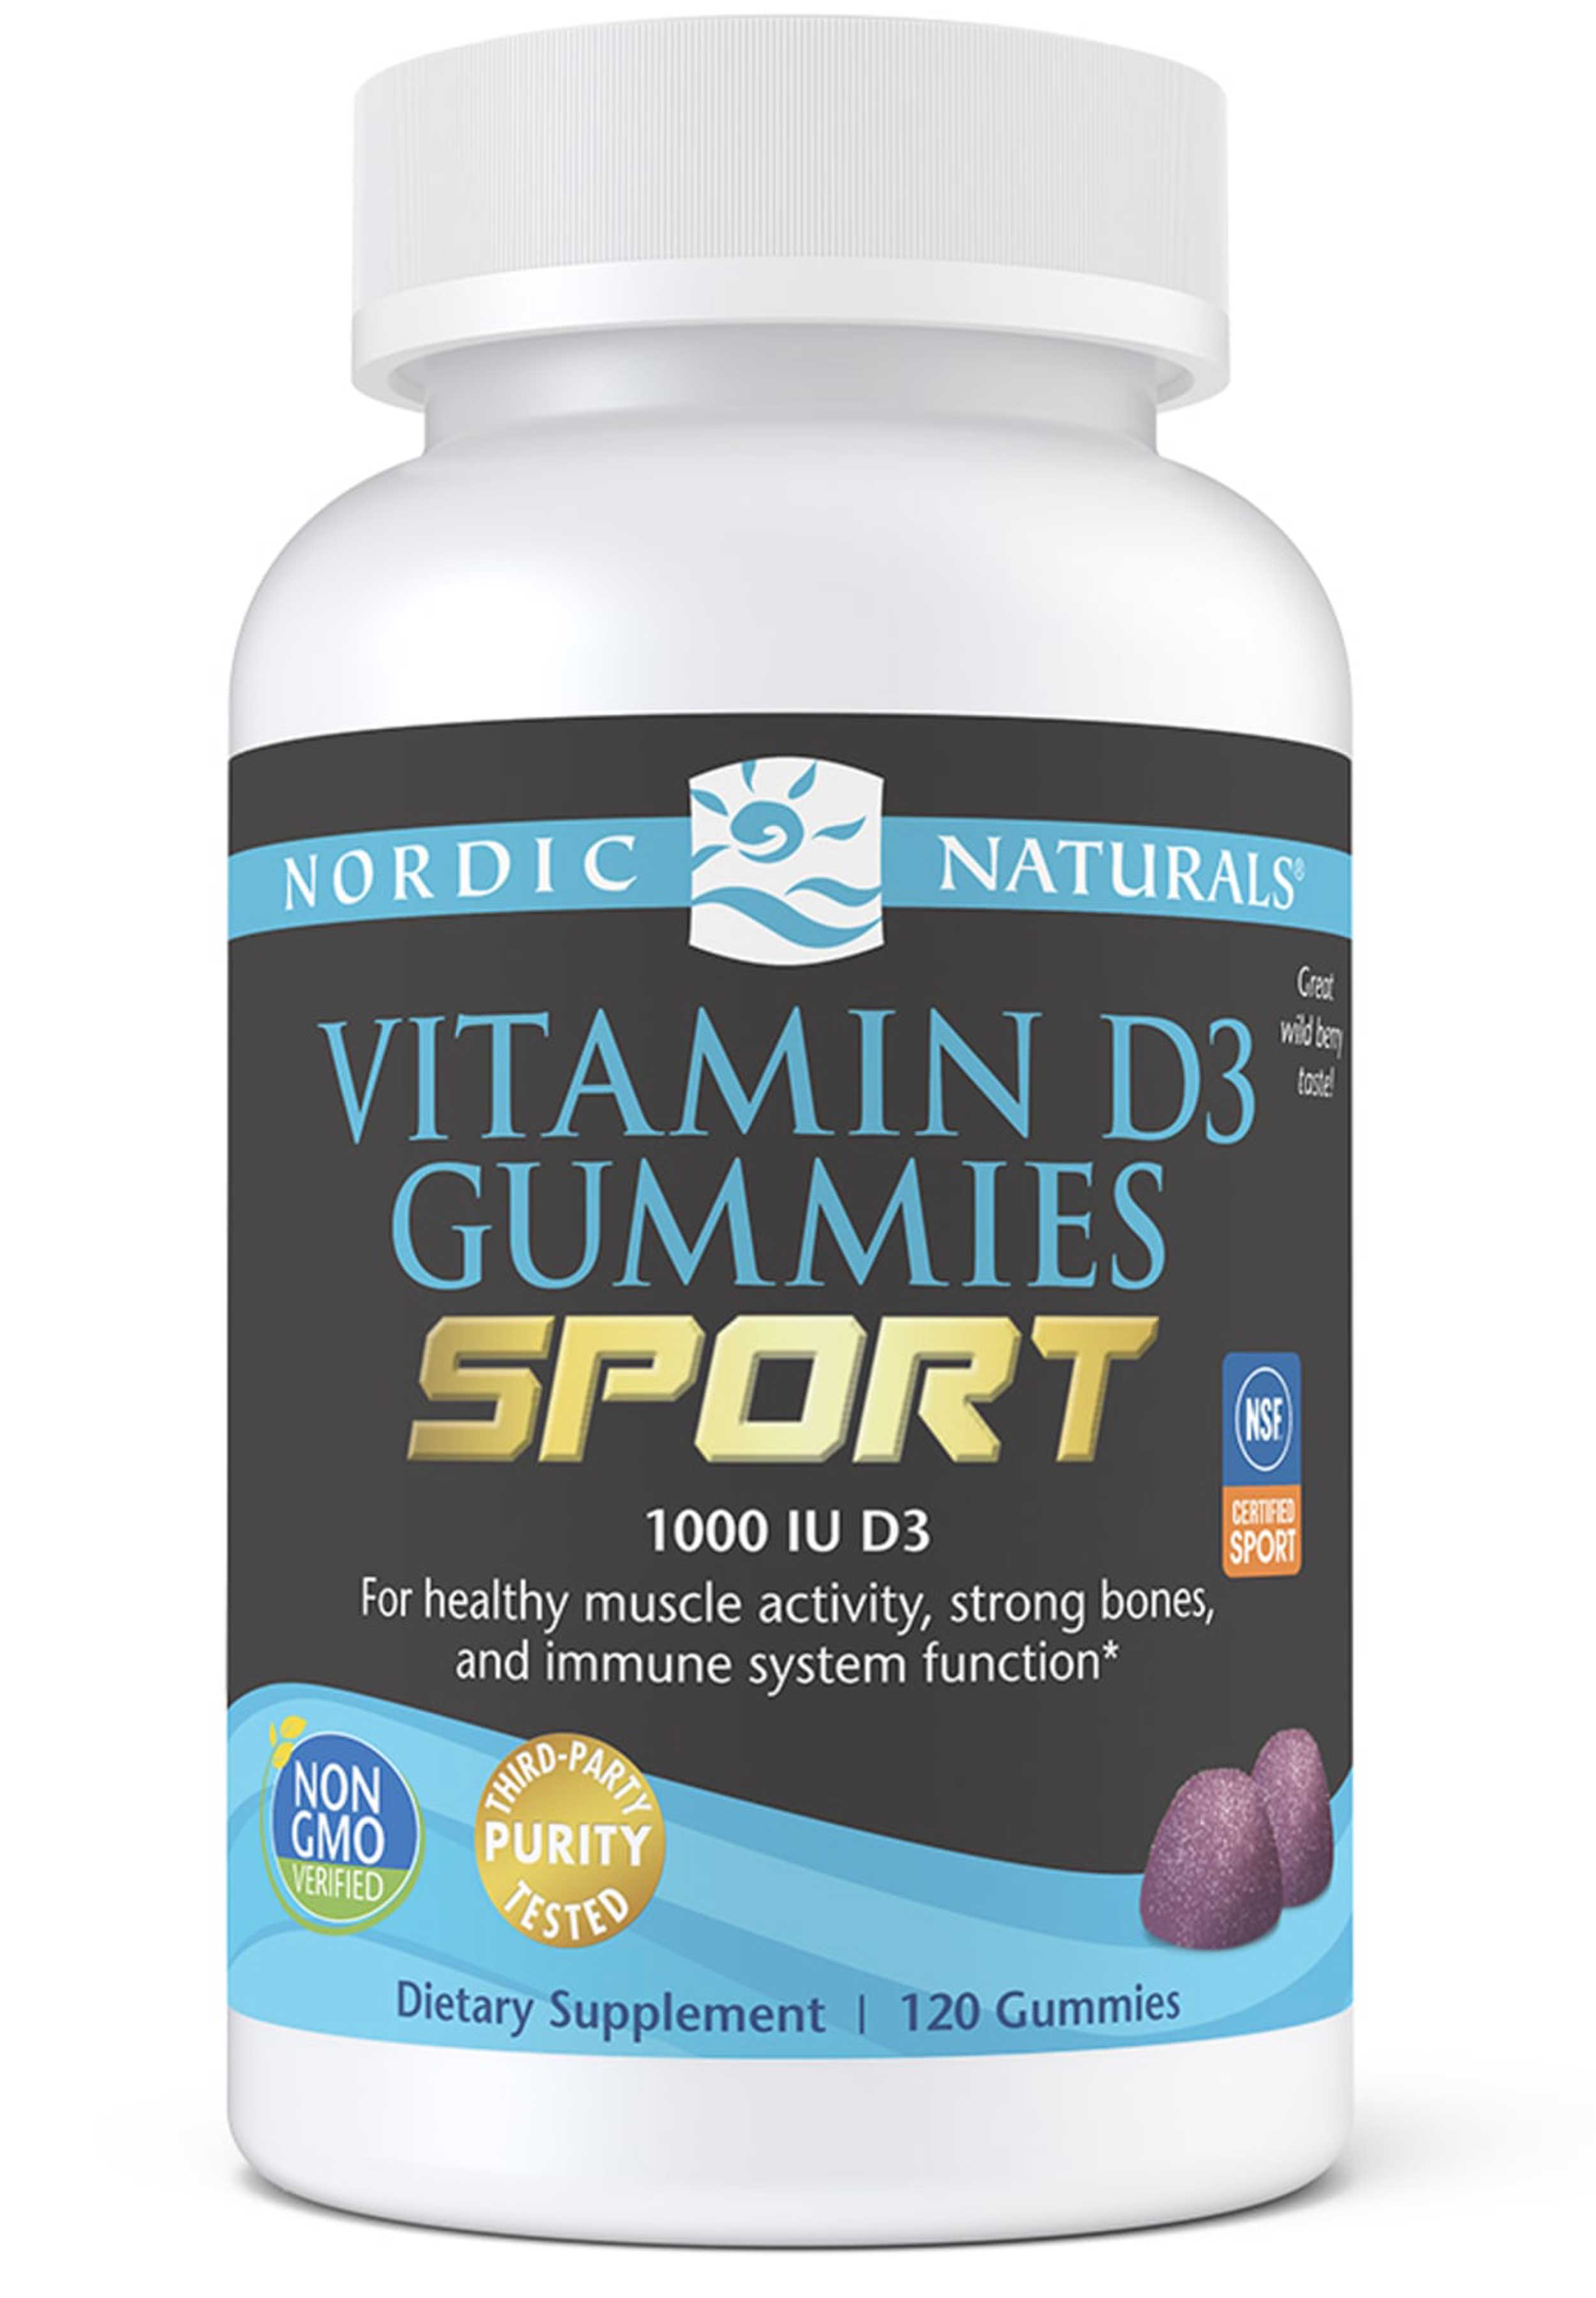 Nordic Naturals Vitamin D3 Gummies Sport